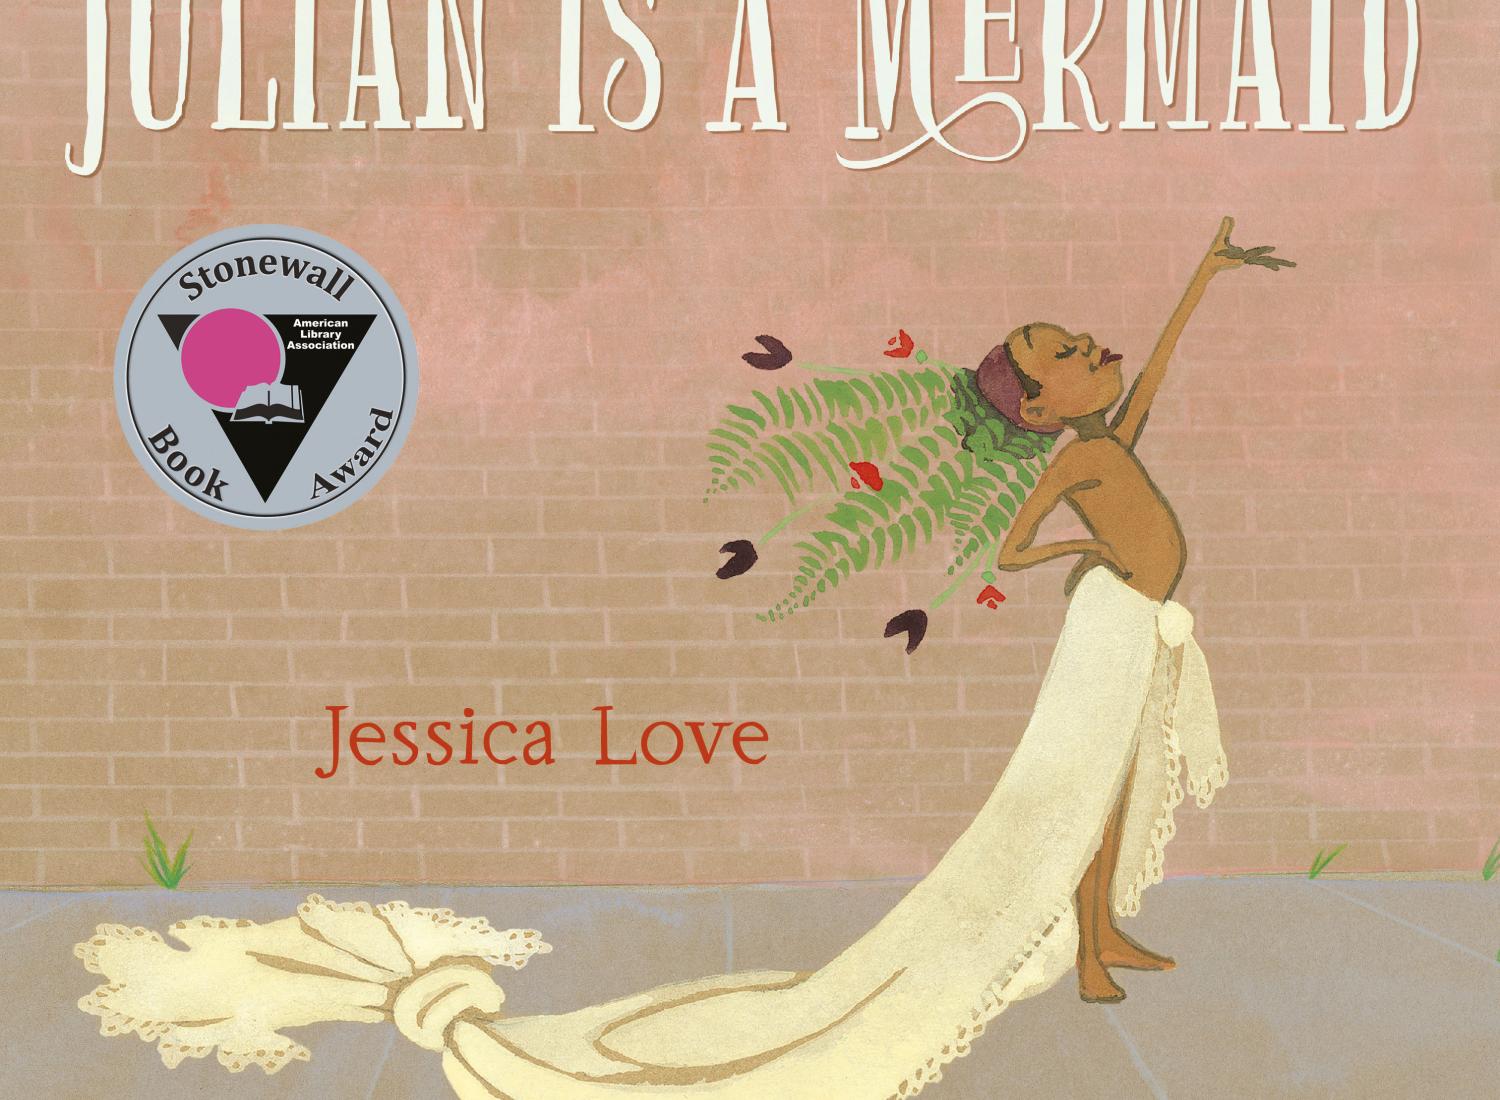 《朱利安》的封面图片是《美人鱼》，其中有一个穿着美人鱼服装、高举手臂的孩子和石墙图书奖。